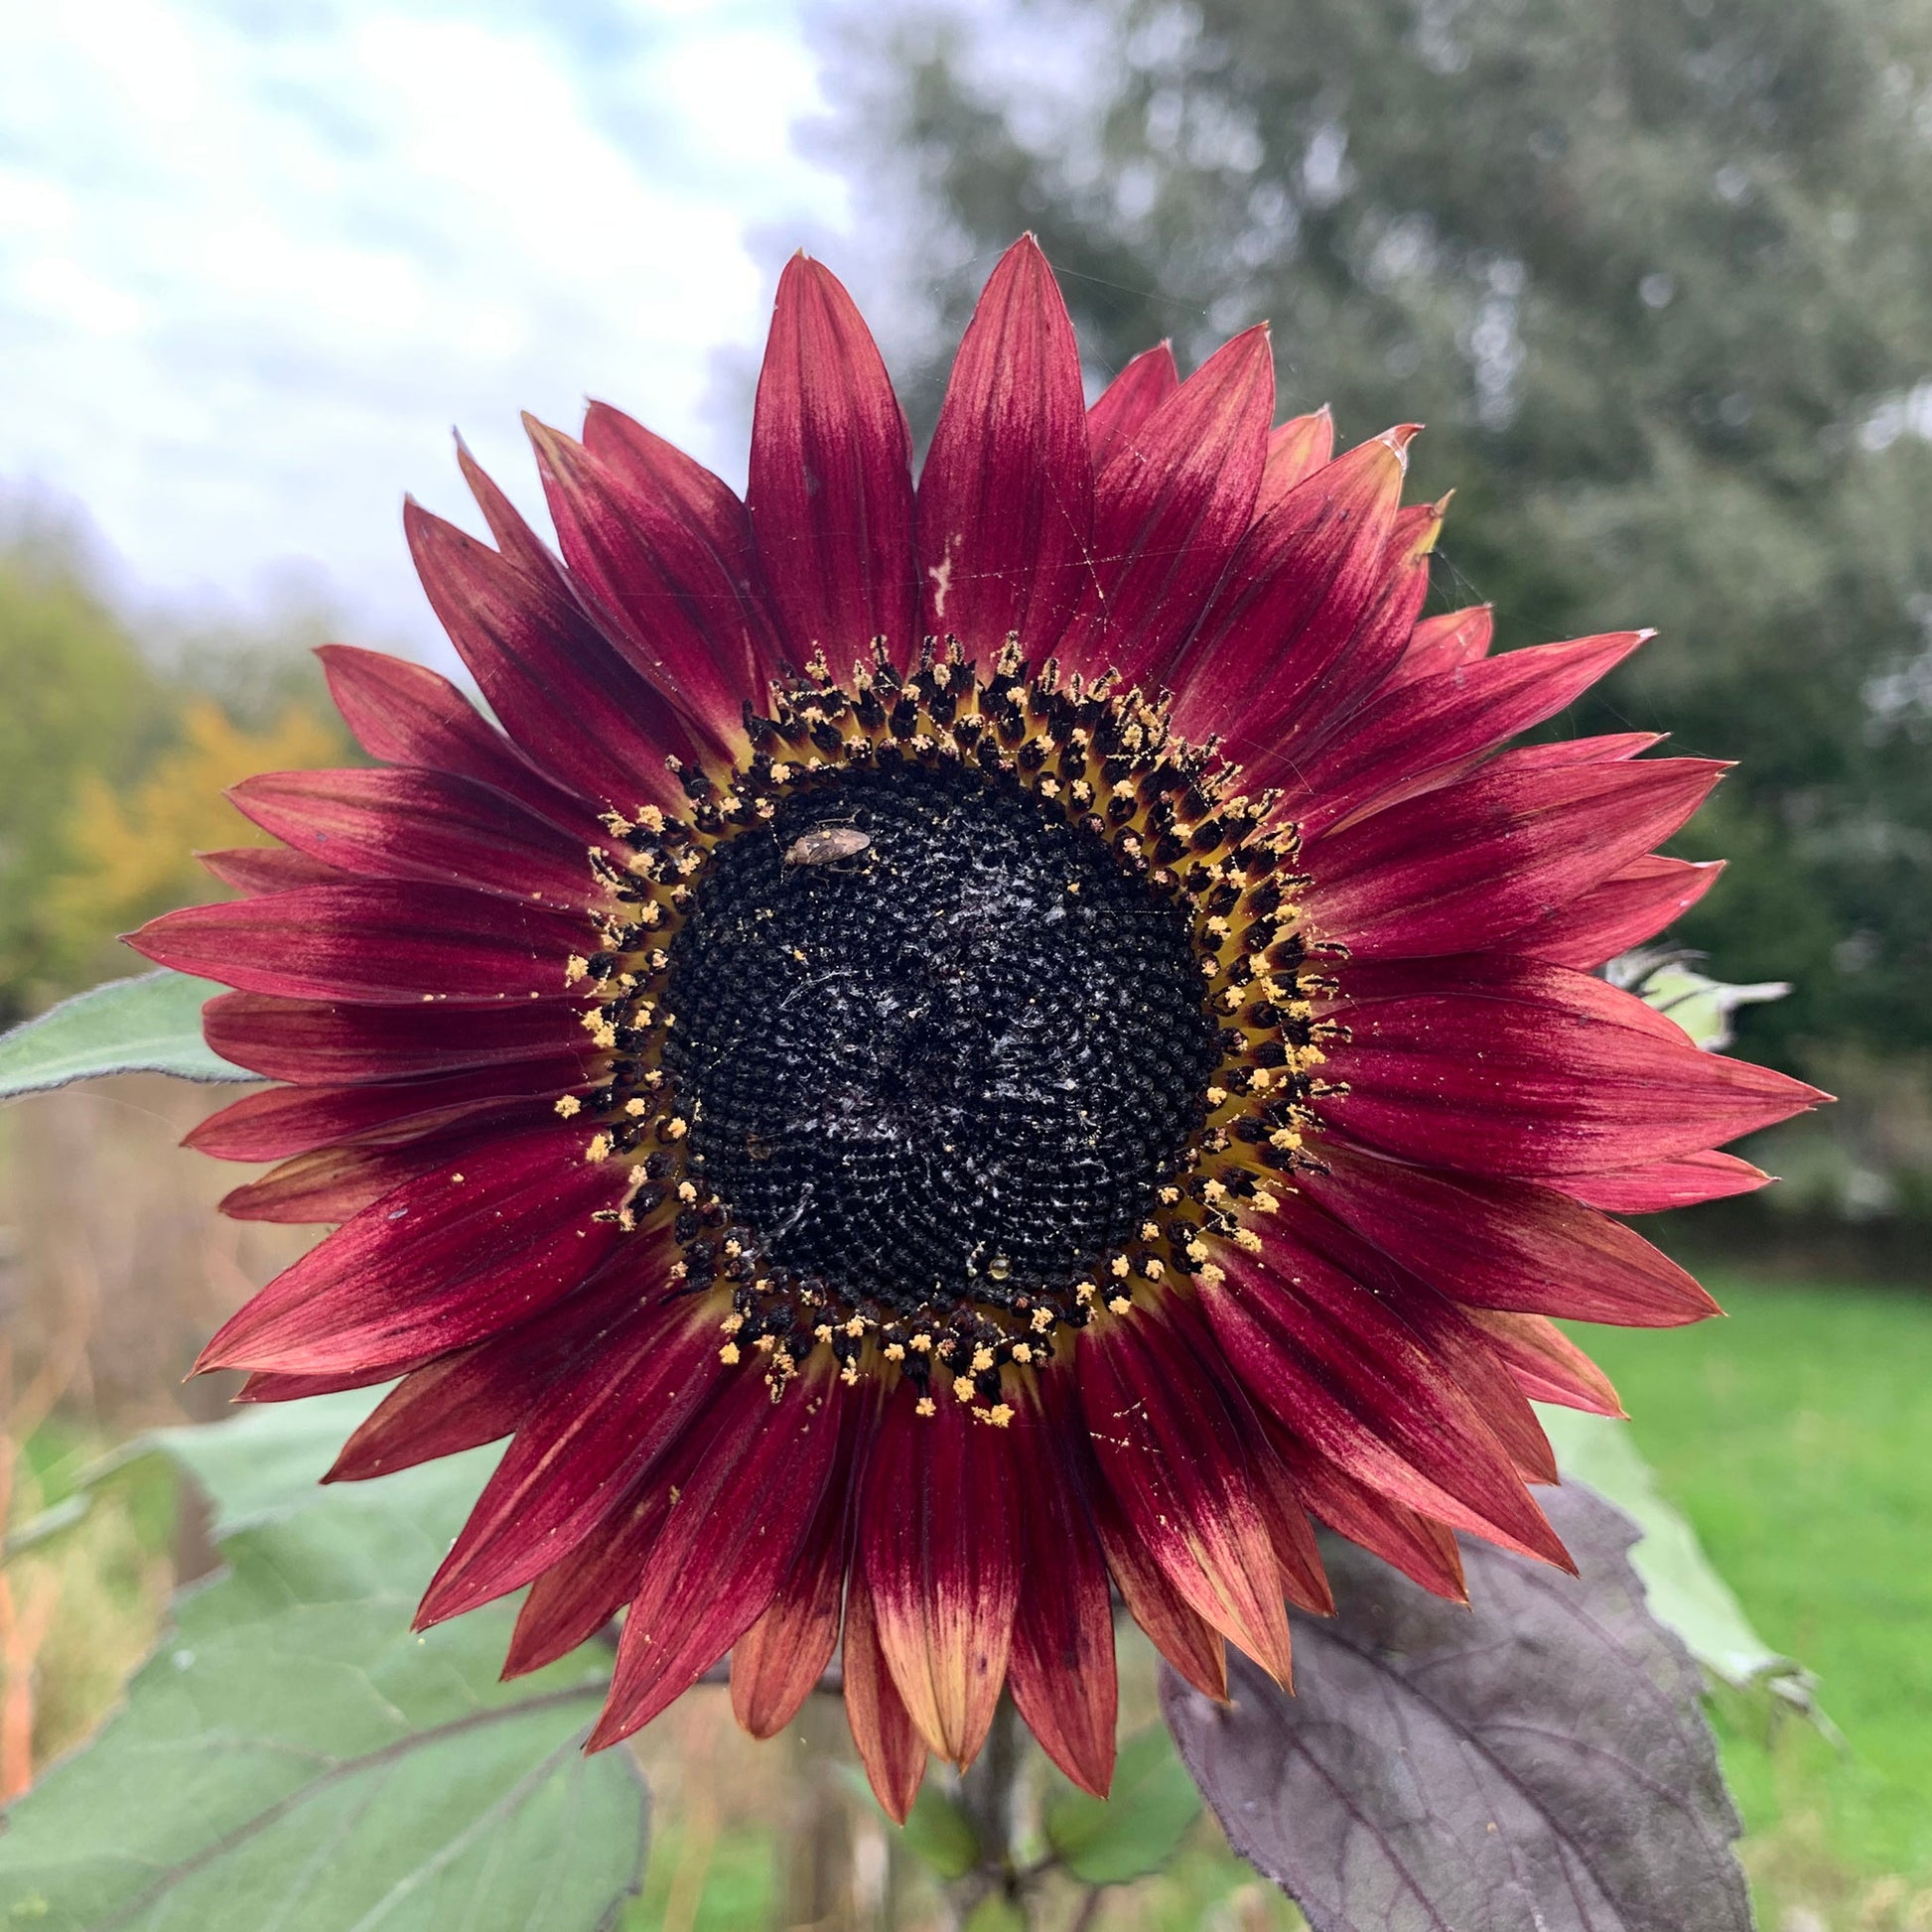 Autumn Beauty' - Sunflower Seeds Mix - 1 Gram